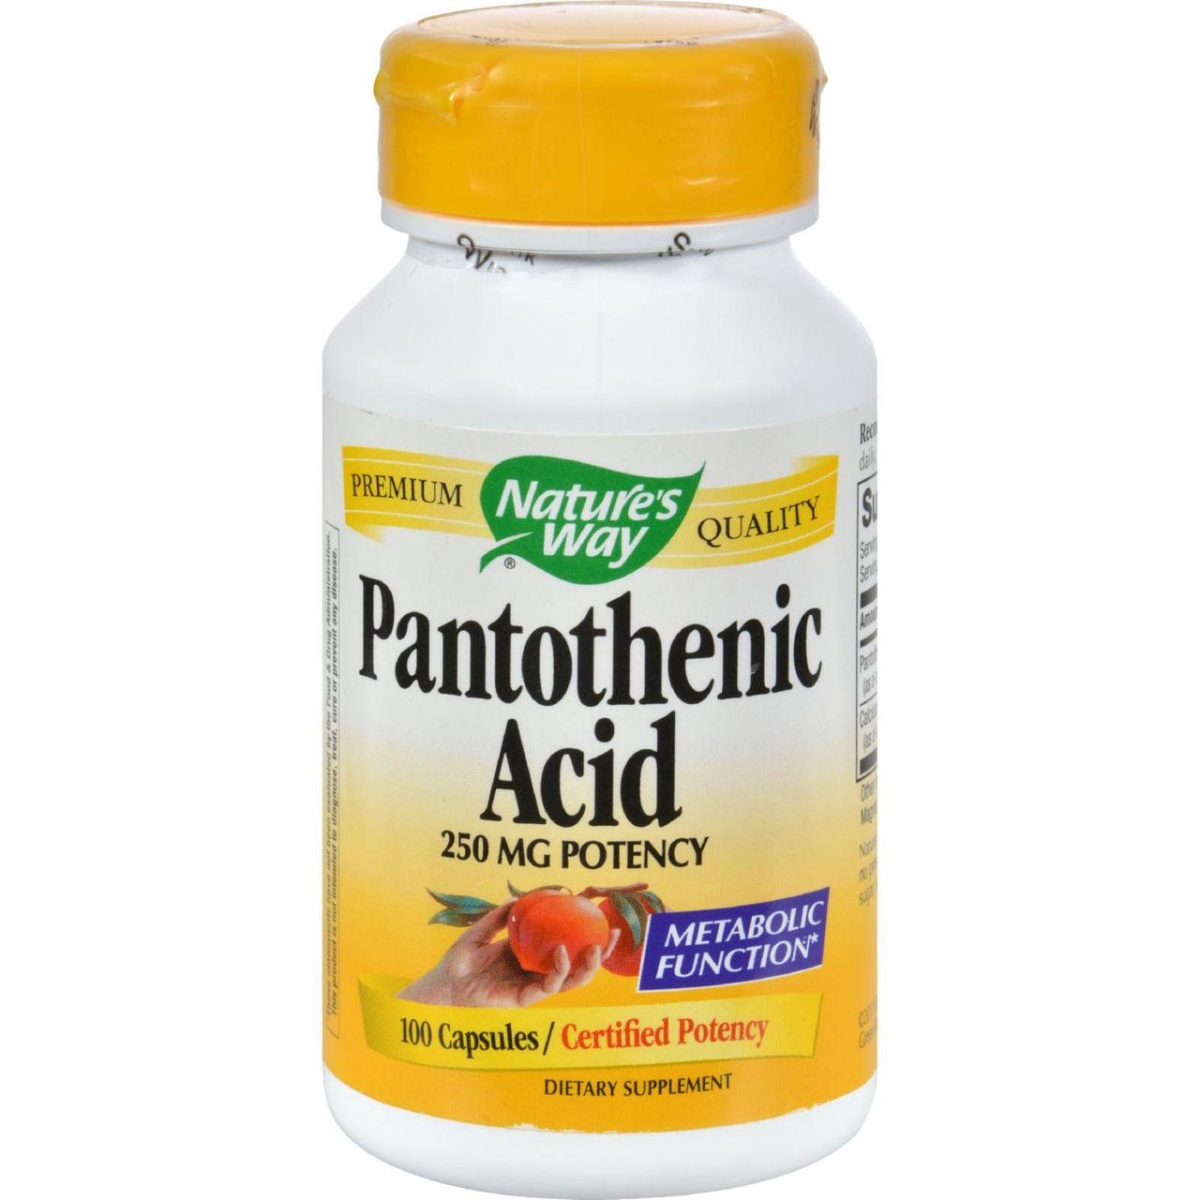 Hg0816389 250 Mg Pantothenic Acid - 100 Capsules